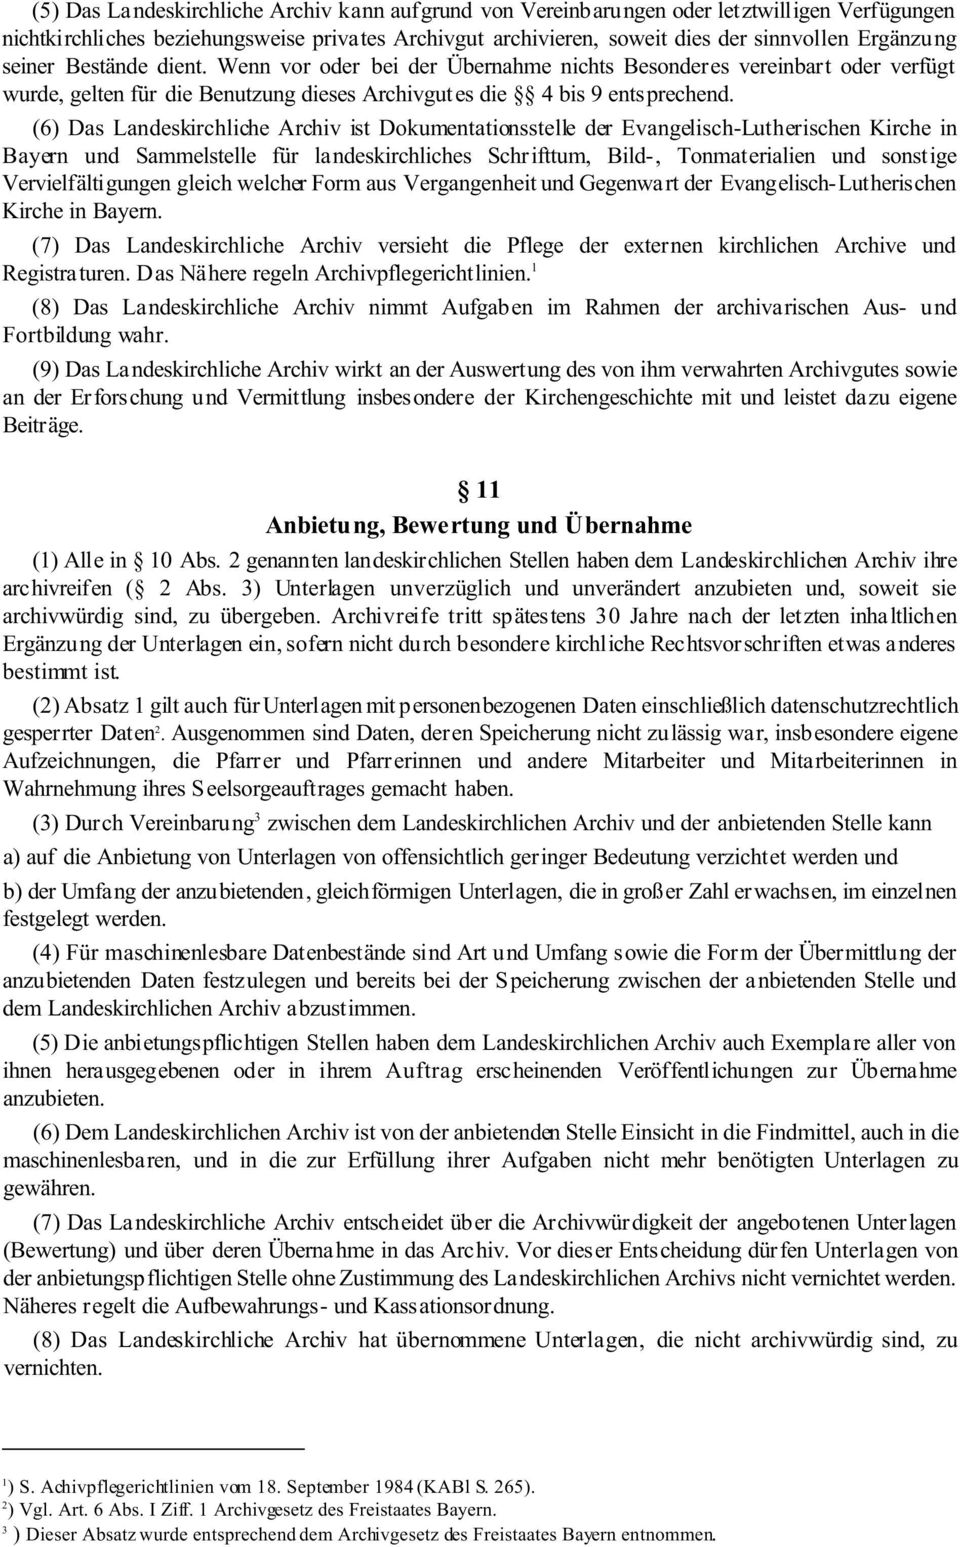 (6) Das Landeskirchliche Archiv ist Dokumentationsstelle der Evangelisch-Lutherischen Kirche in Bayern und Sammelstelle für landeskirchliches Schrifttum, Bild-, Tonmaterialien und sonstige